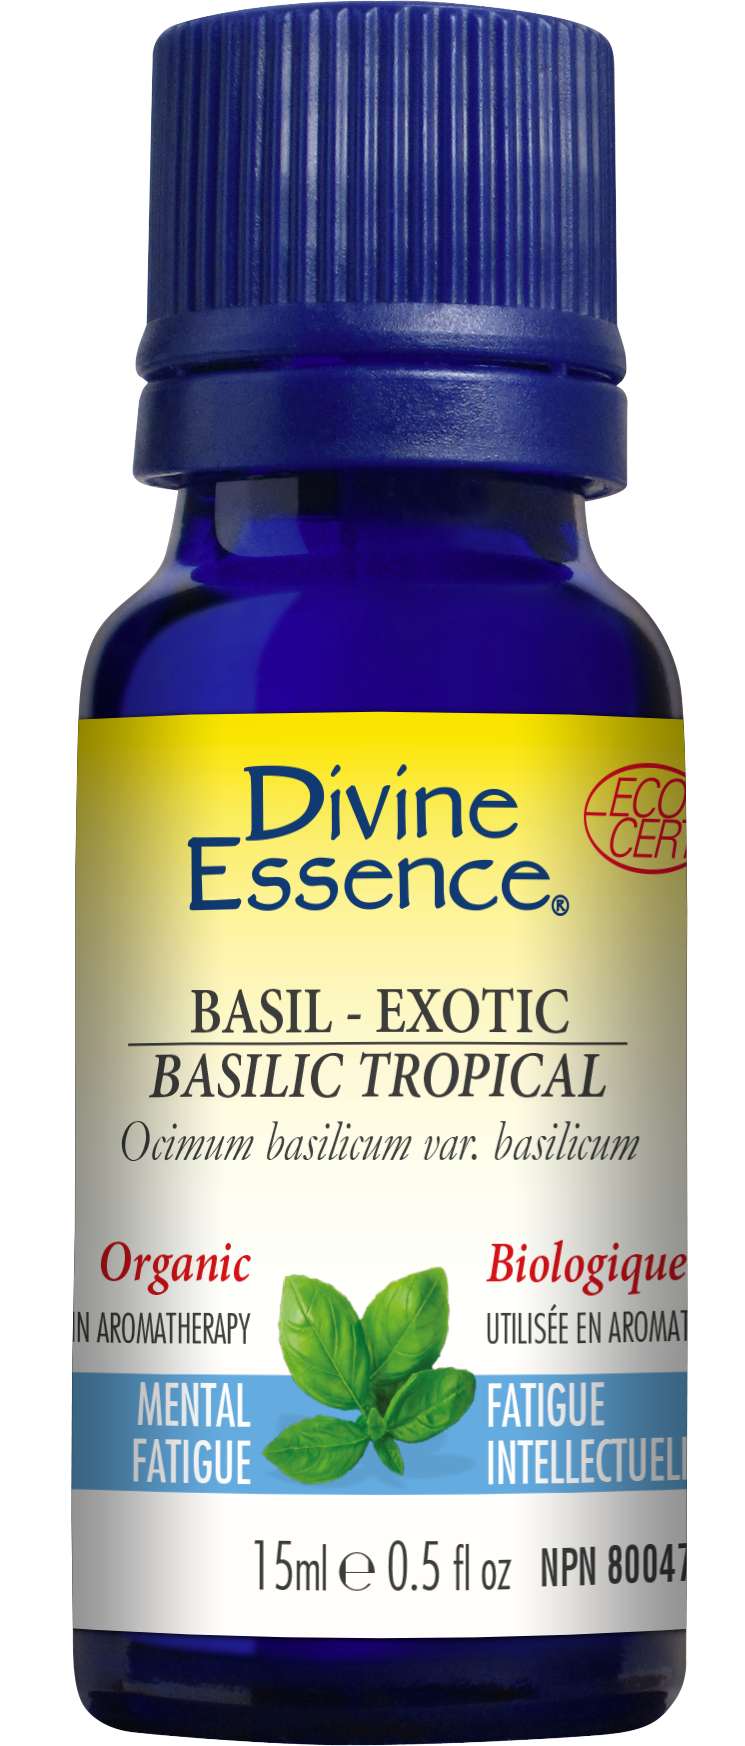 Basil - Exotic